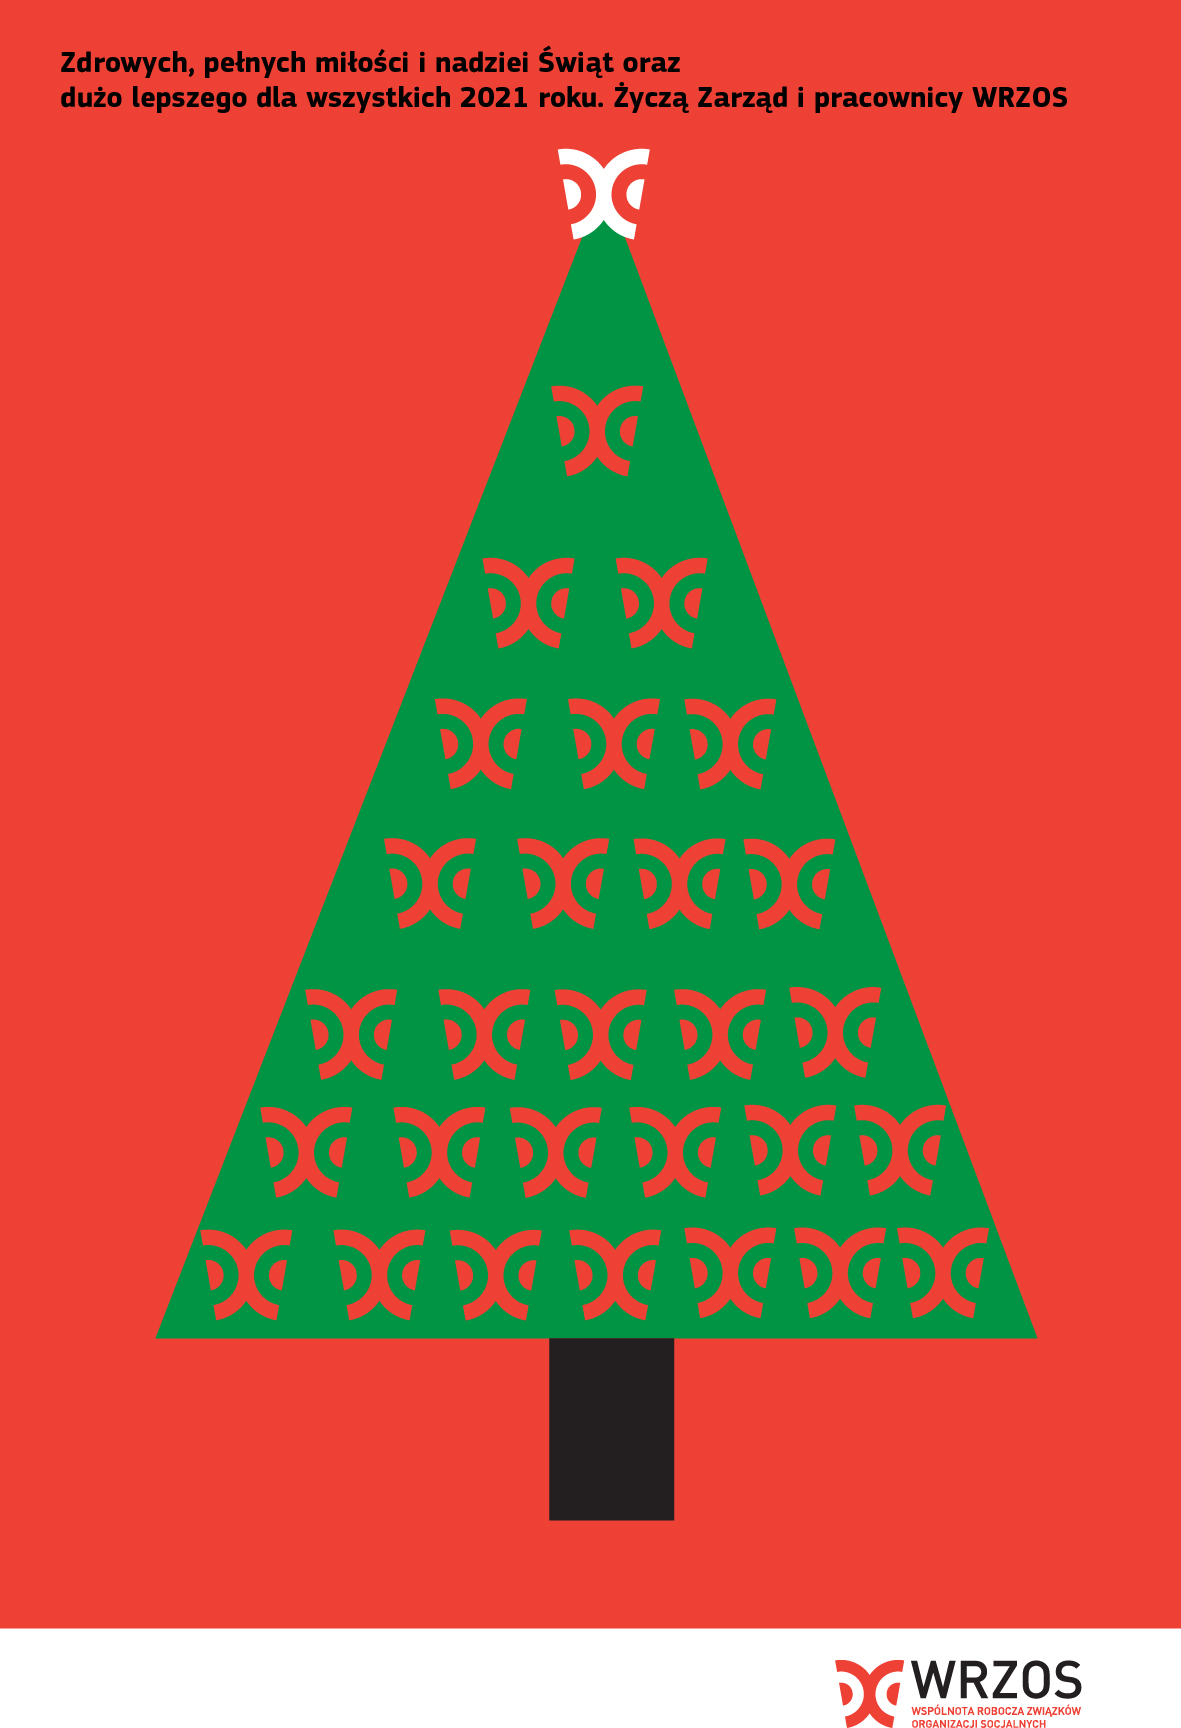 Zielona choinka z logotypami WRZOS w miejscu bombek, na czerownym tle. U góry napisa: Zdrowych, pełnych miłości i nadziei Świąt oraz dużo lepszego dla wszystkich roku 2021! życzą Zarąd i pracownicy WRZOS.